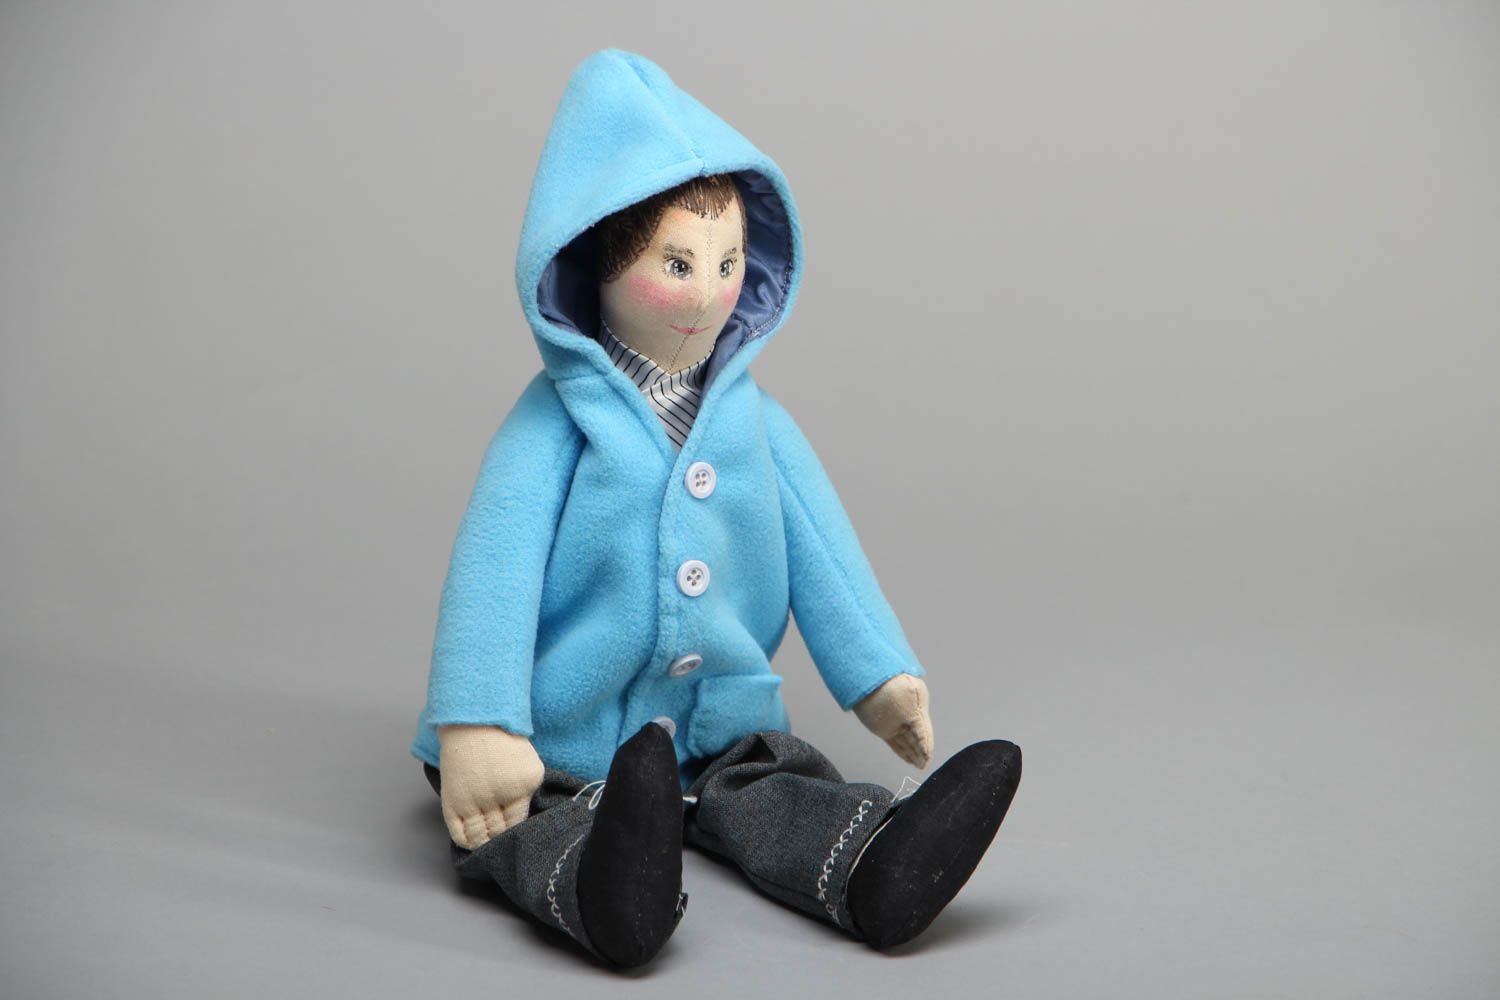 Авторская мягкая игрушка кукла Мальчик фото 1